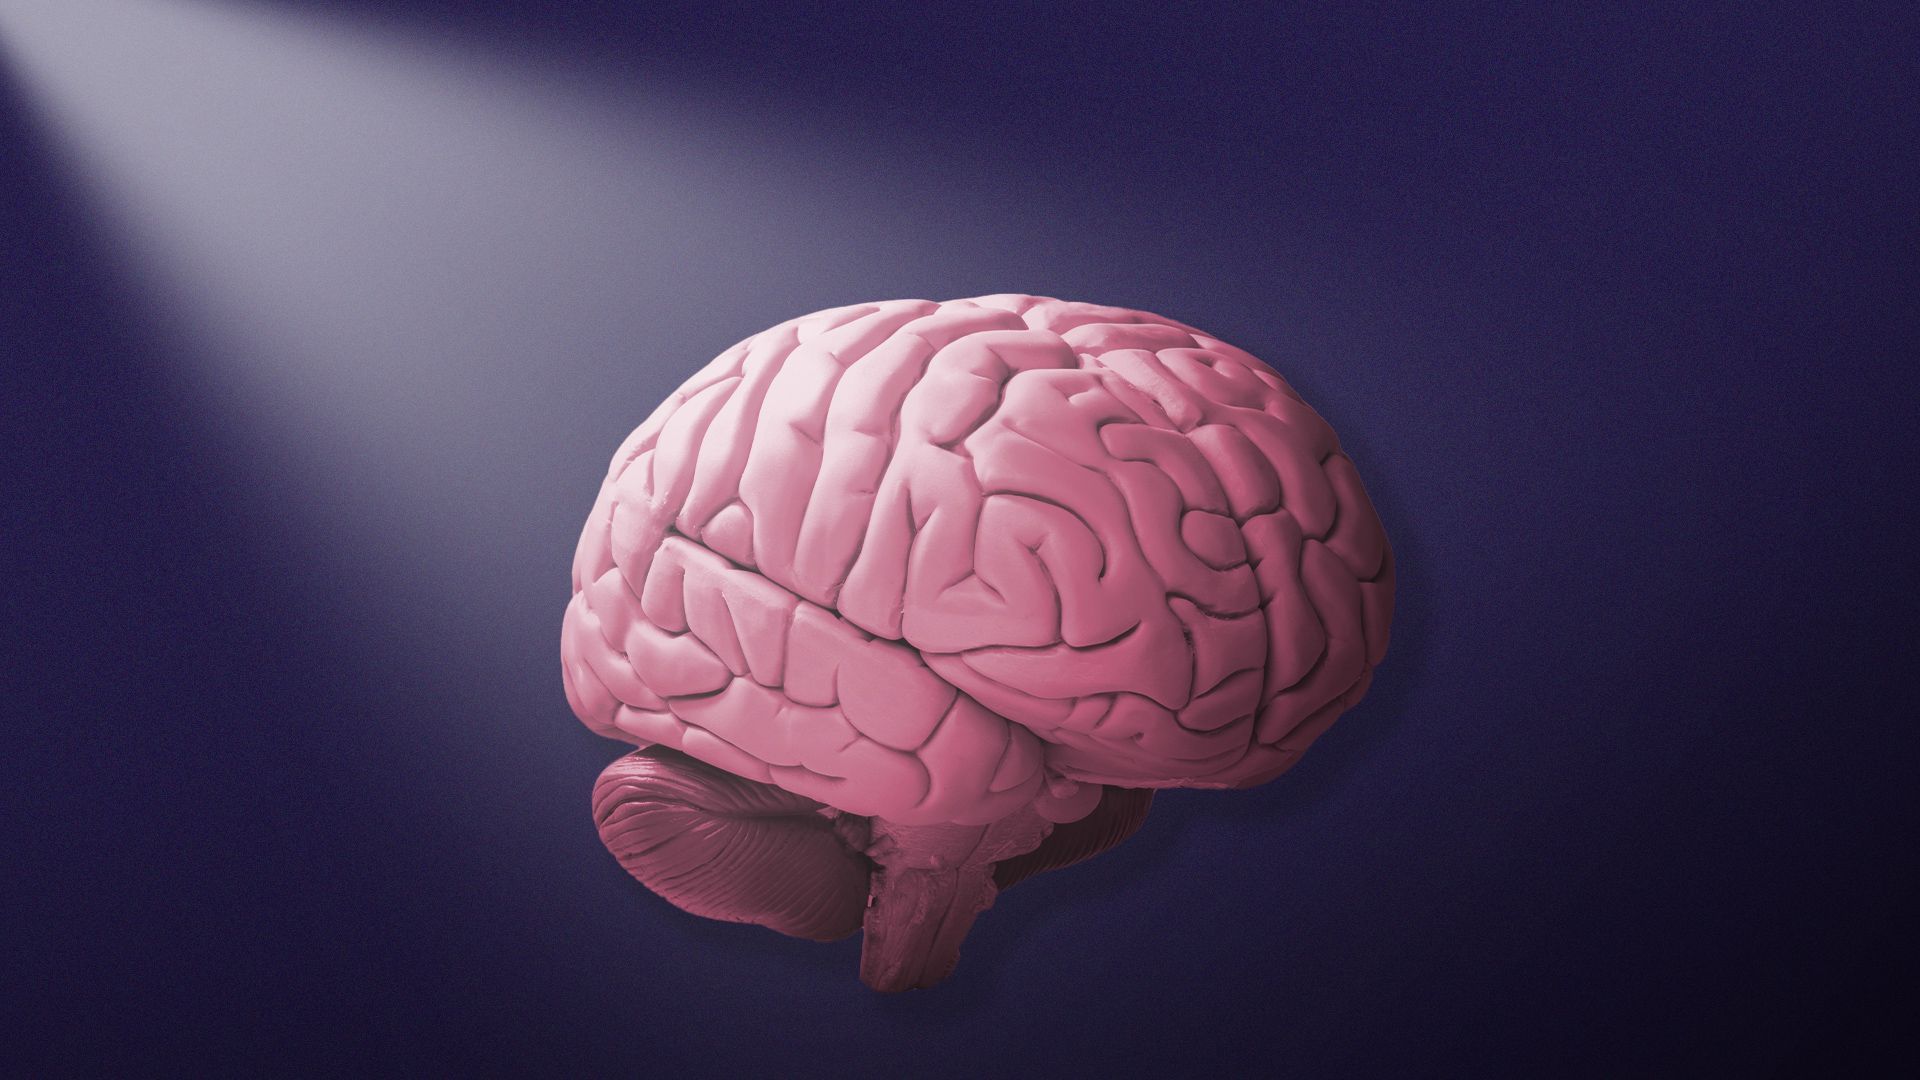 Illustration of a spotlight shining on a brain.